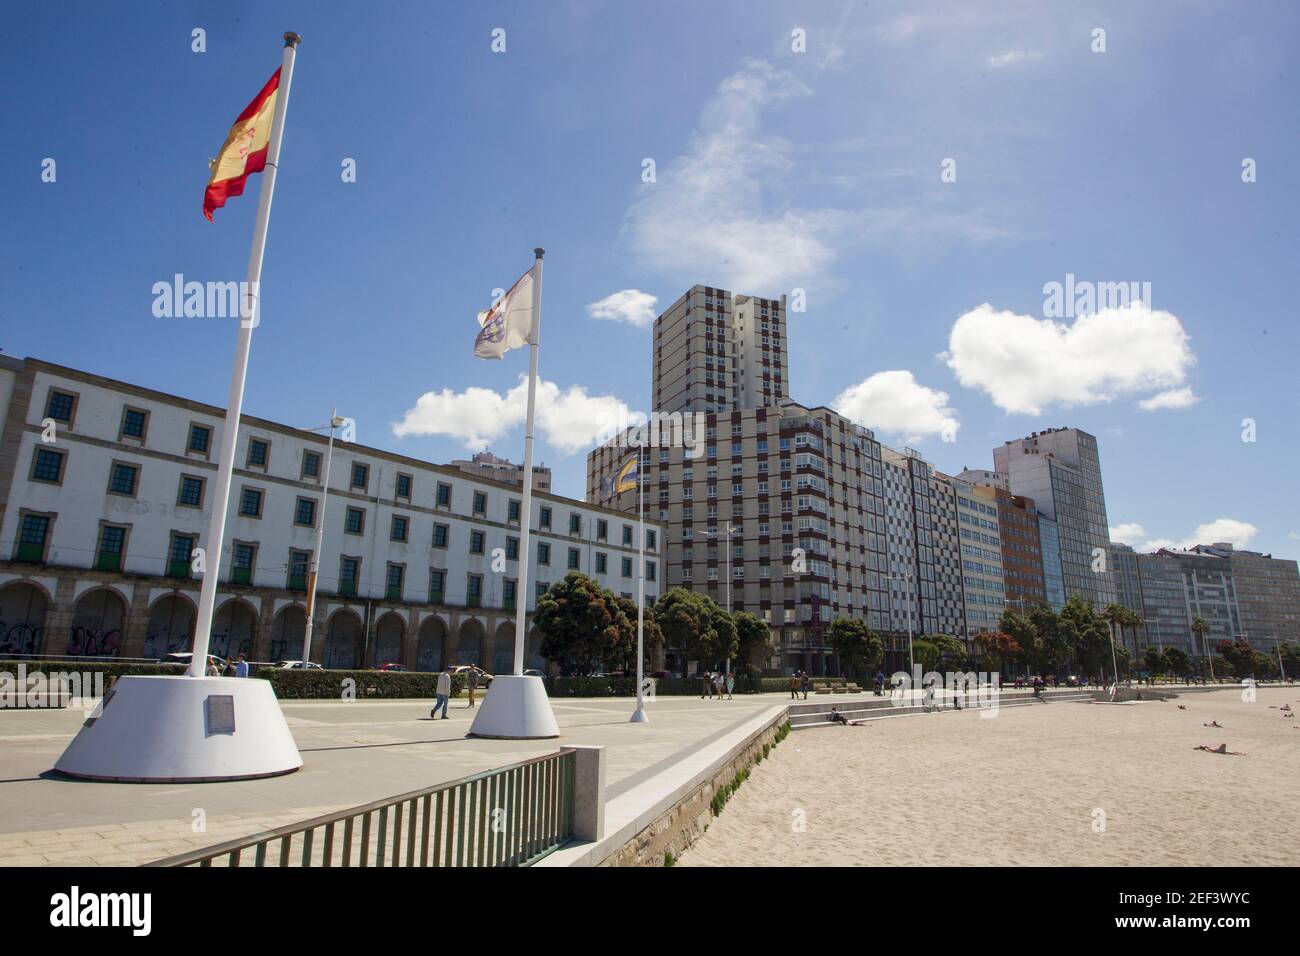 Coruna-Spagna. Bandiere della Spagna e della Galizia che sventolano nel vento sulla passeggiata con la spiaggia di Riazor e gli edifici sullo sfondo il 3 giugno 2017 Foto Stock